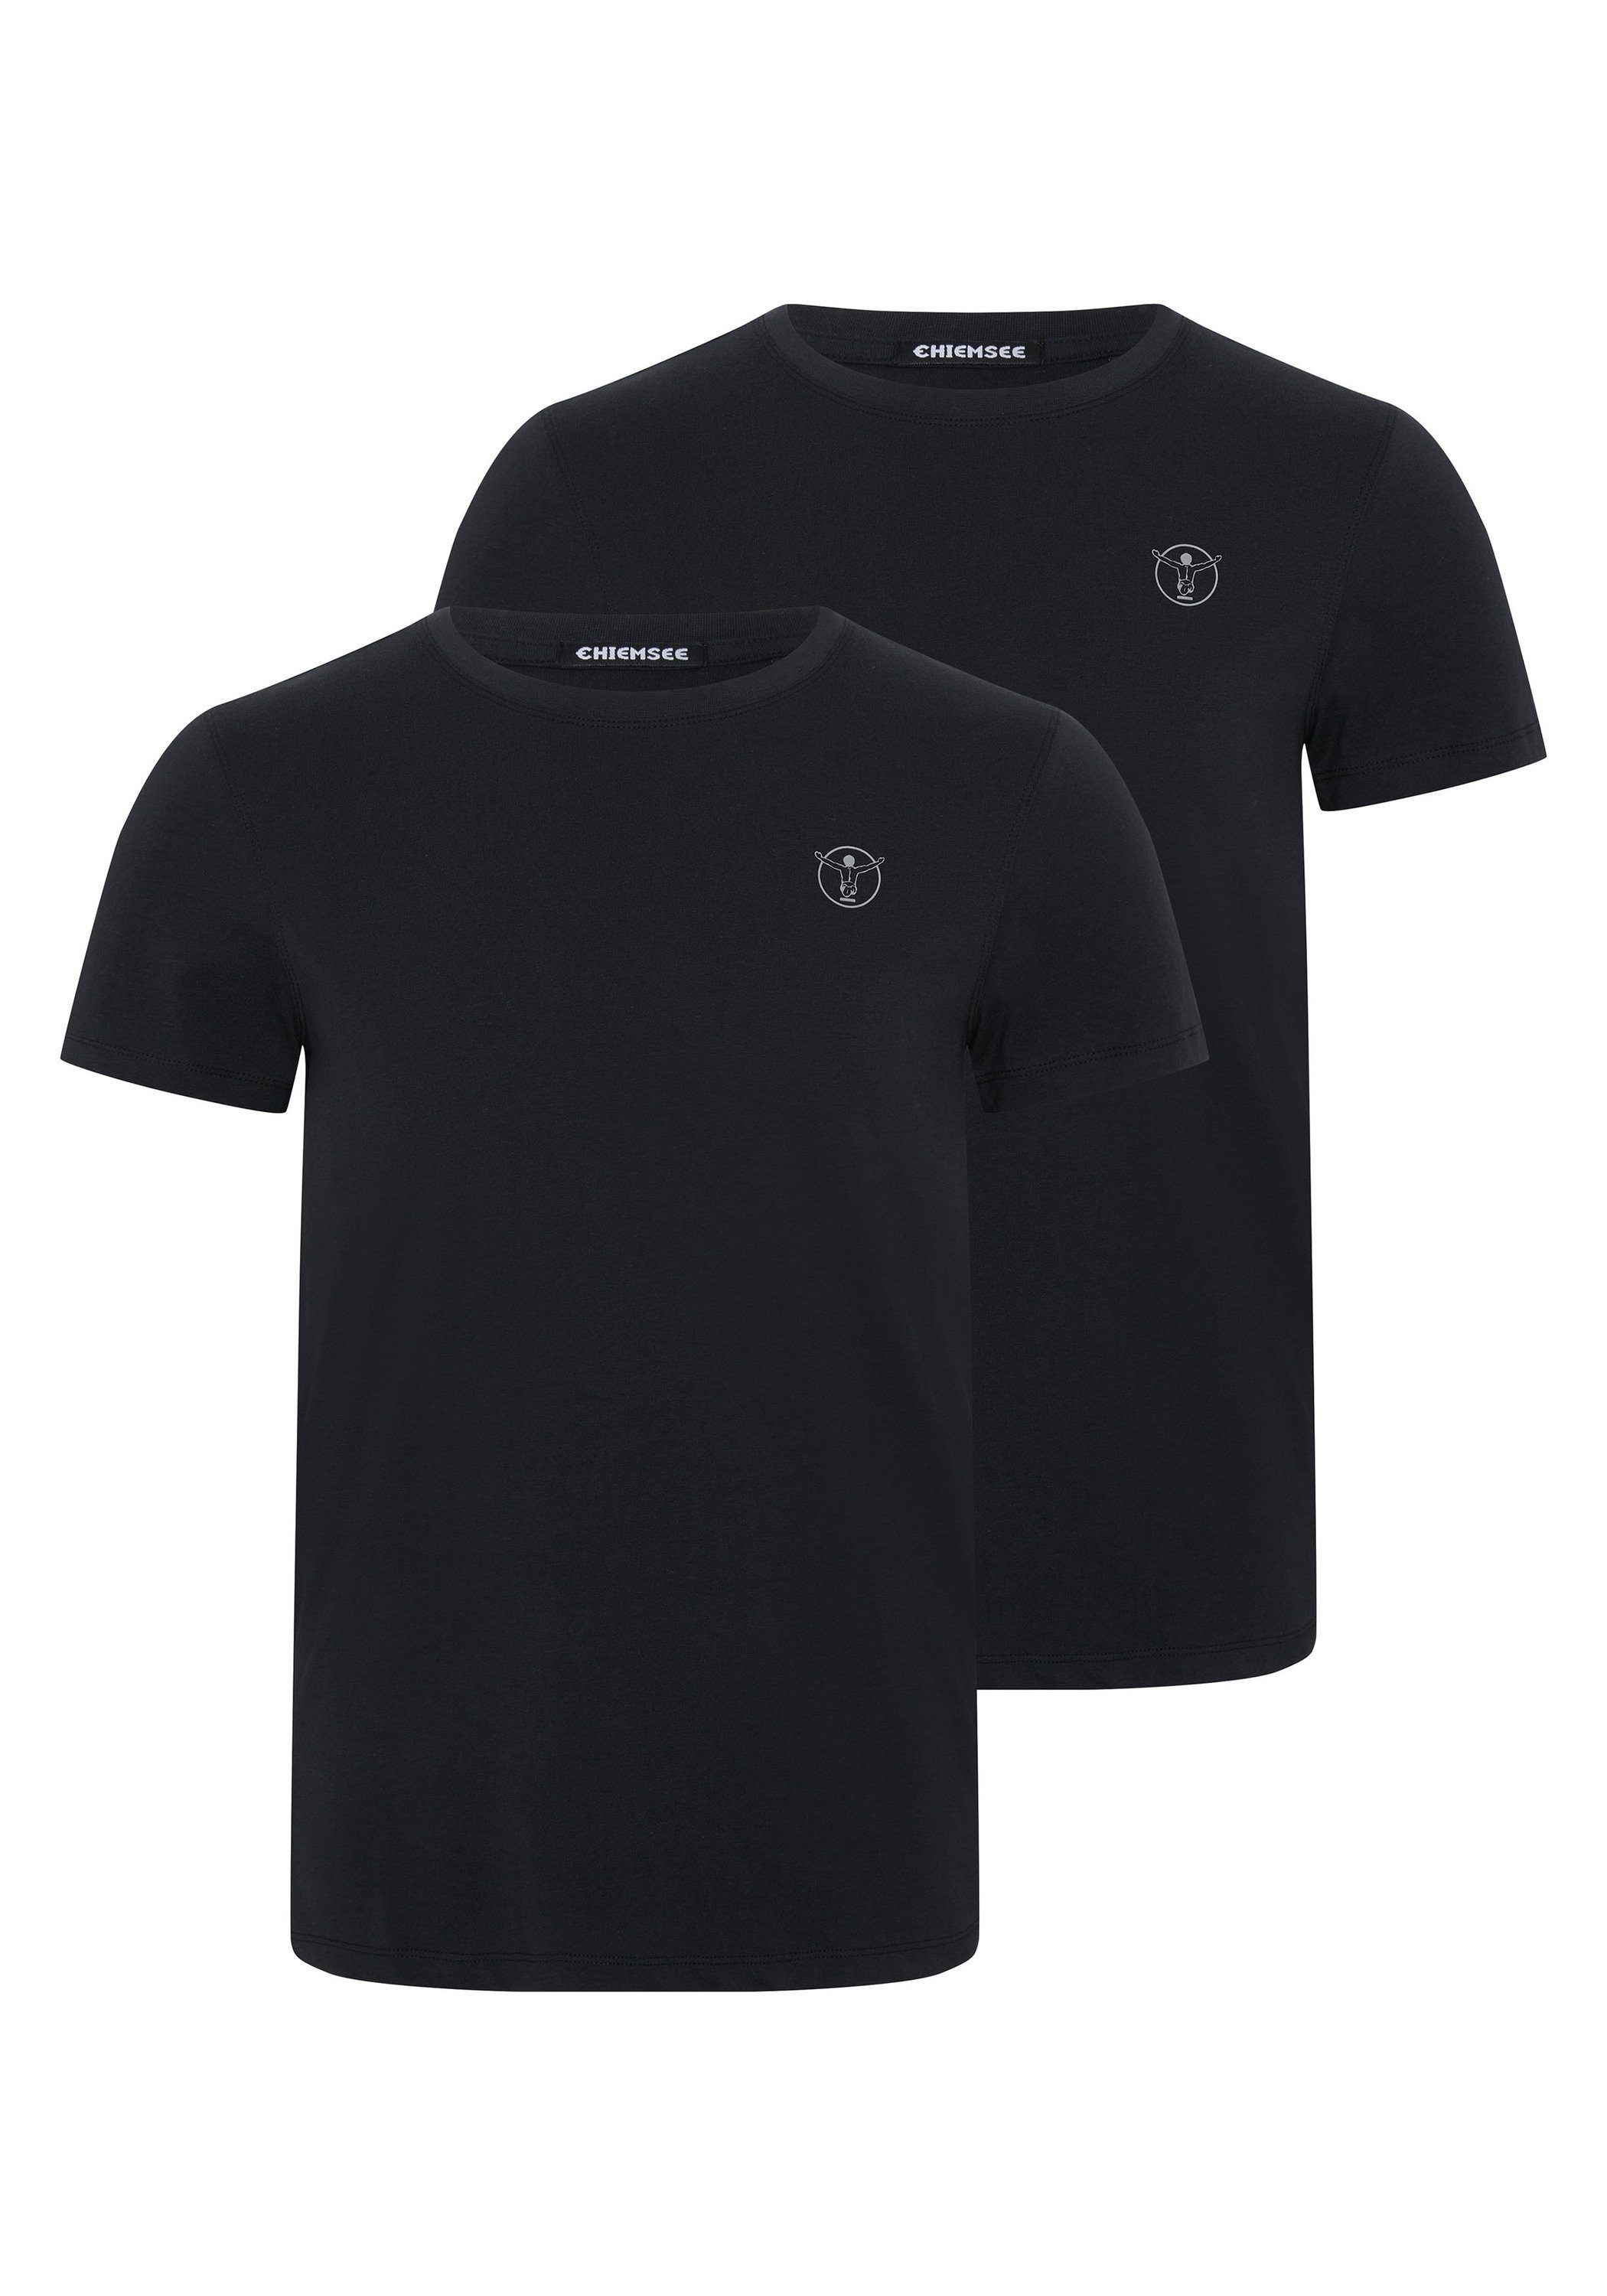 T-Shirts Print-Shirt Chiemsee im Logo mit 2 Deep Basic-Stil Black